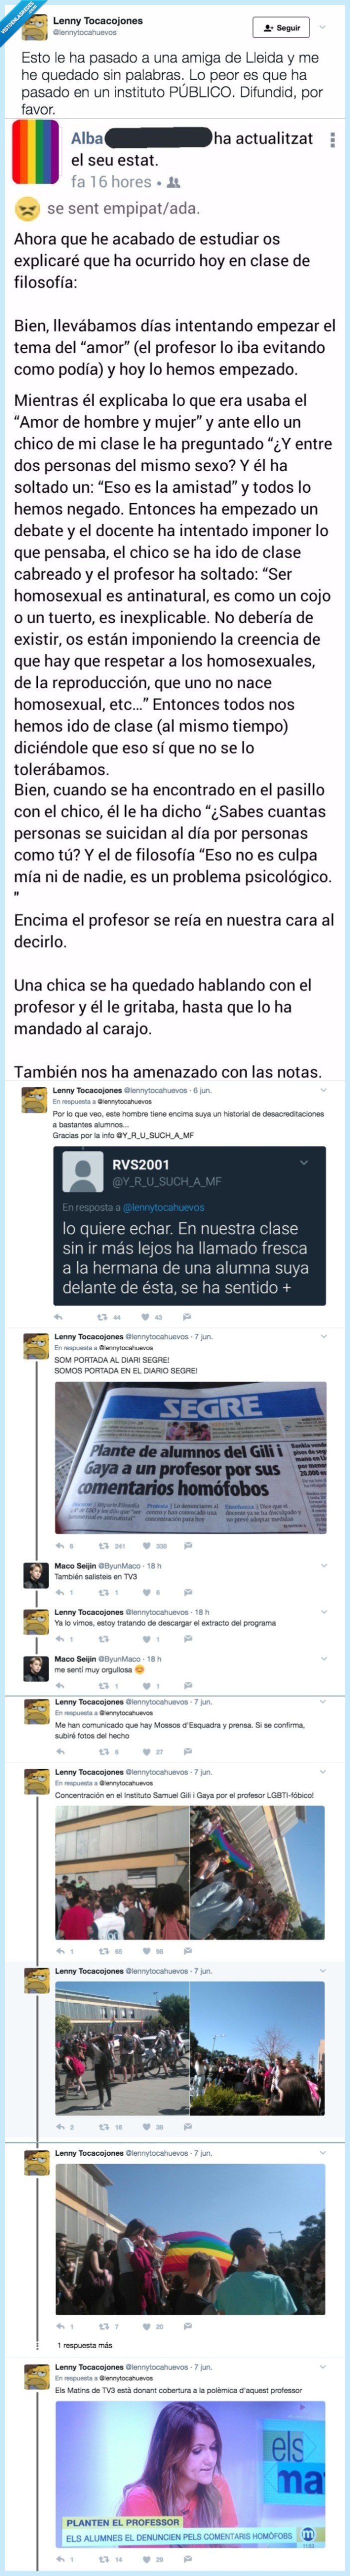 468062 - Los alumnos de un instituto de Lleida se plantan por la actitud homófoba de un profesor